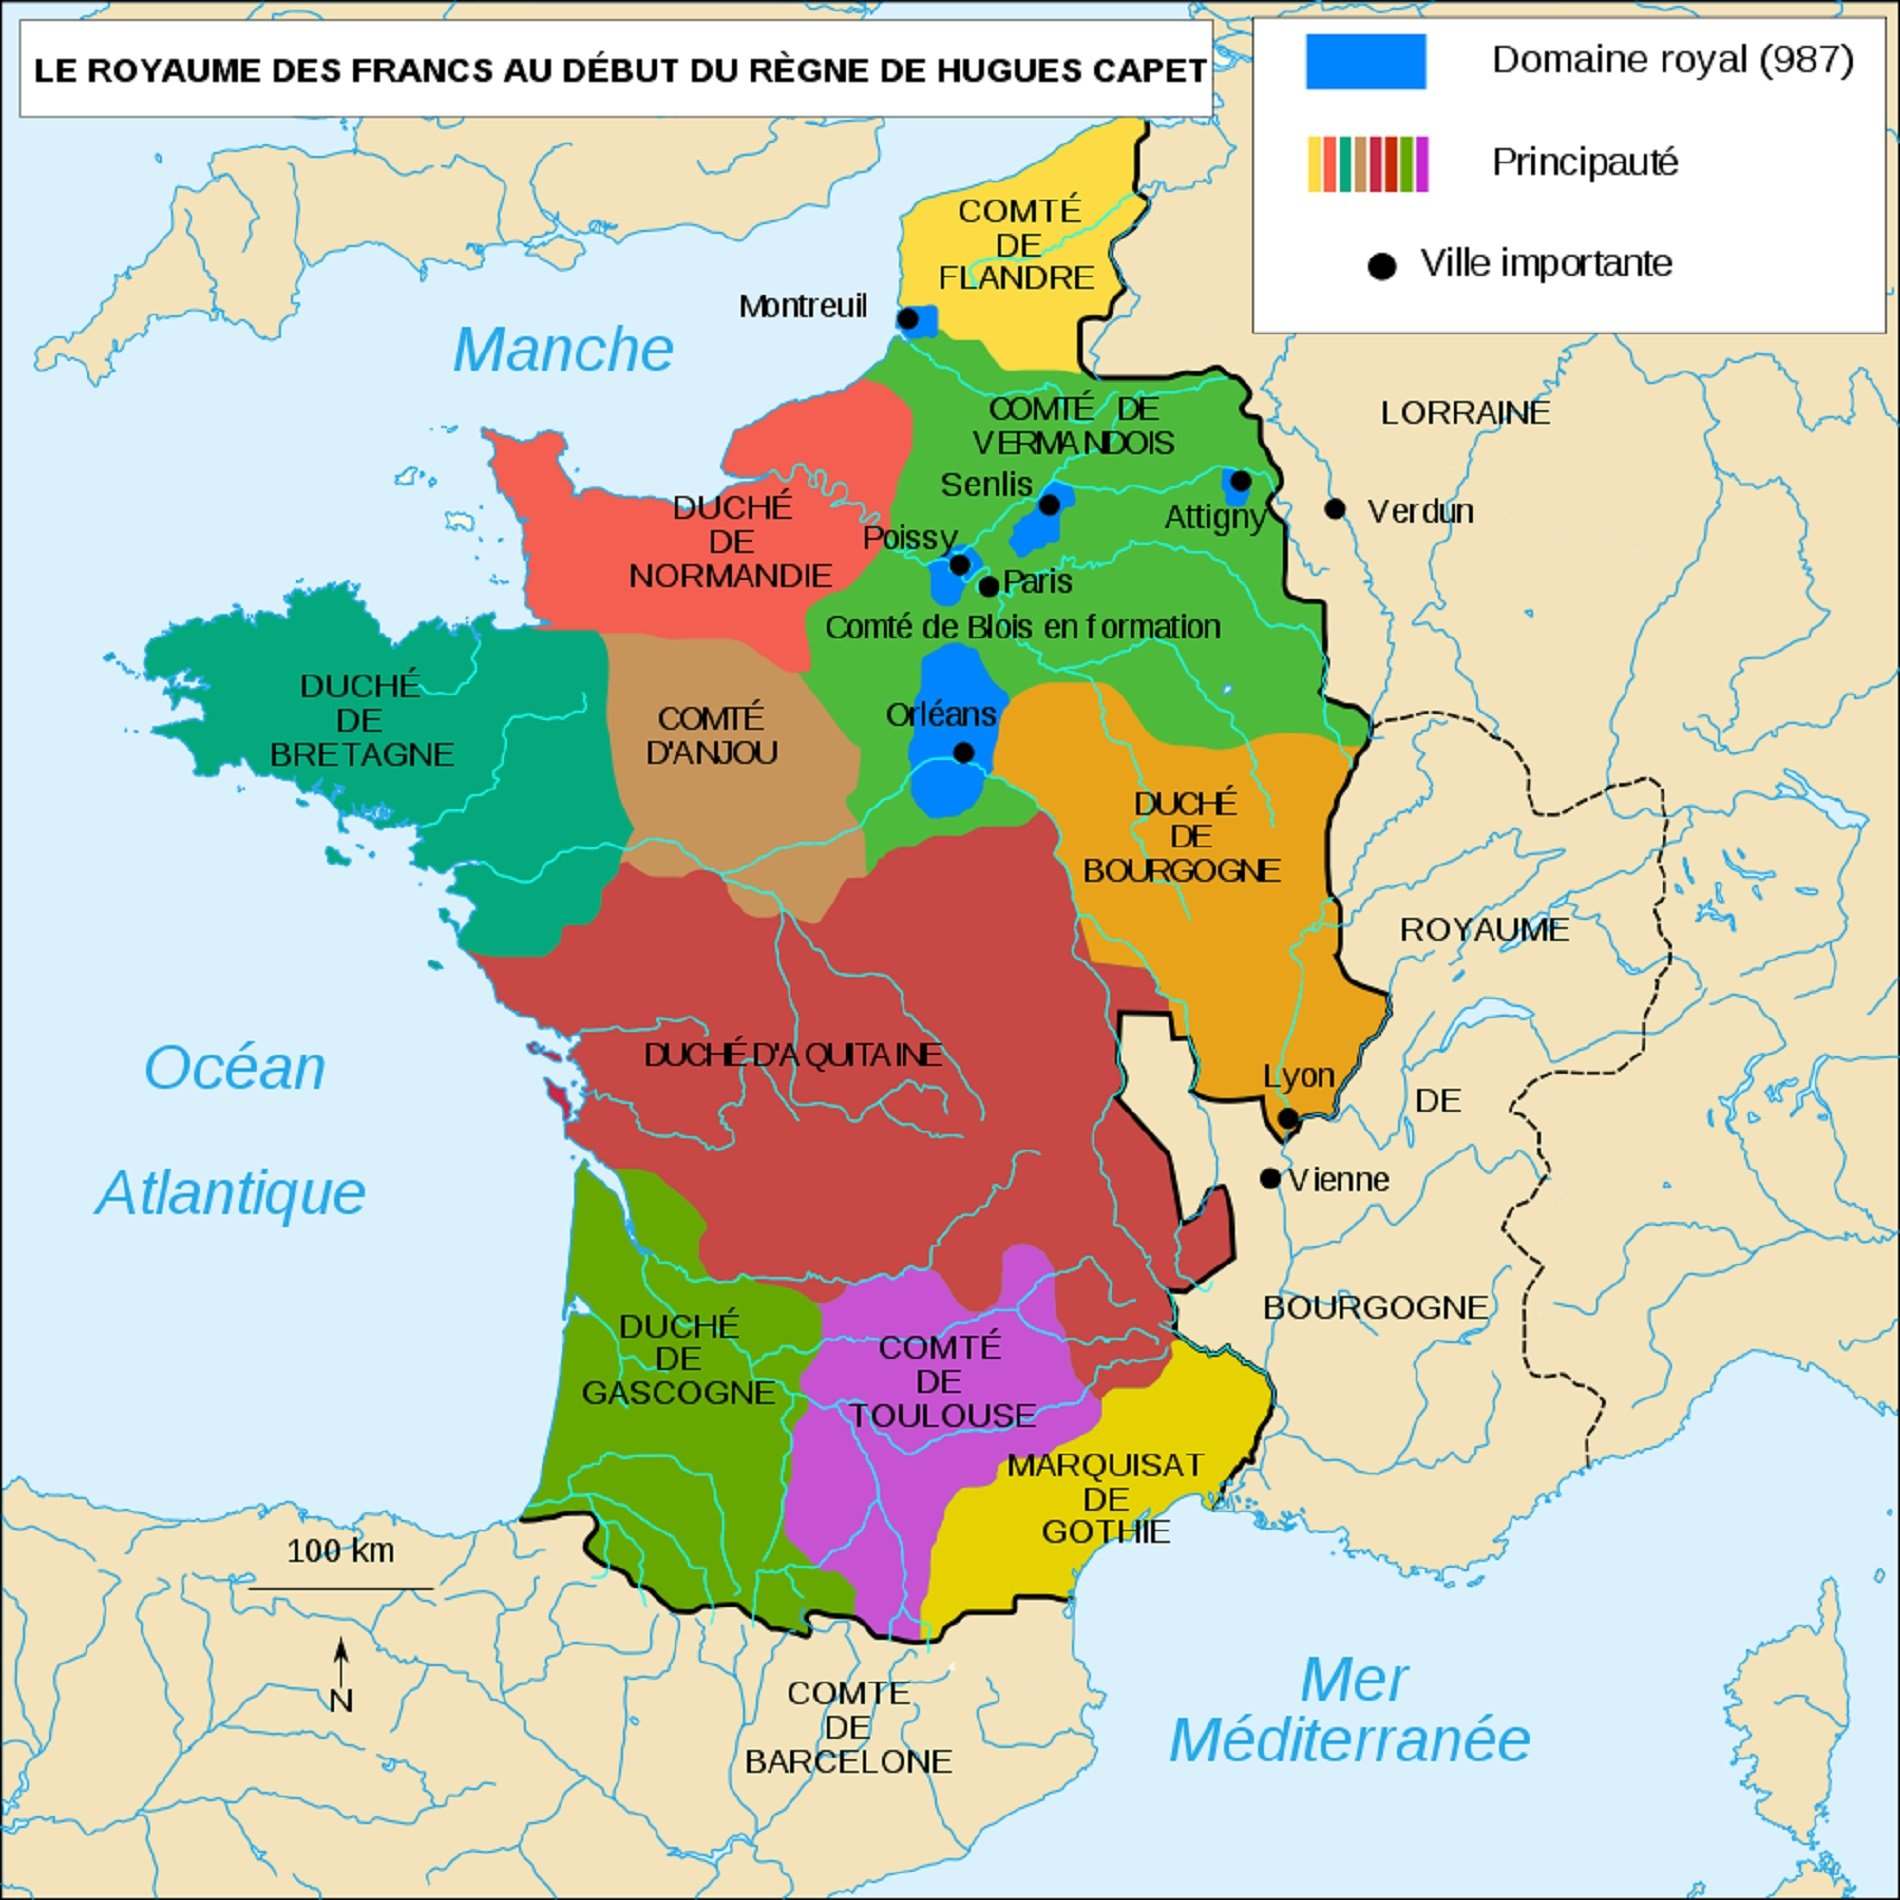 Mapa contemporani del regne de frança al voltant de l'any 1000. Font Cartes Històriques de France